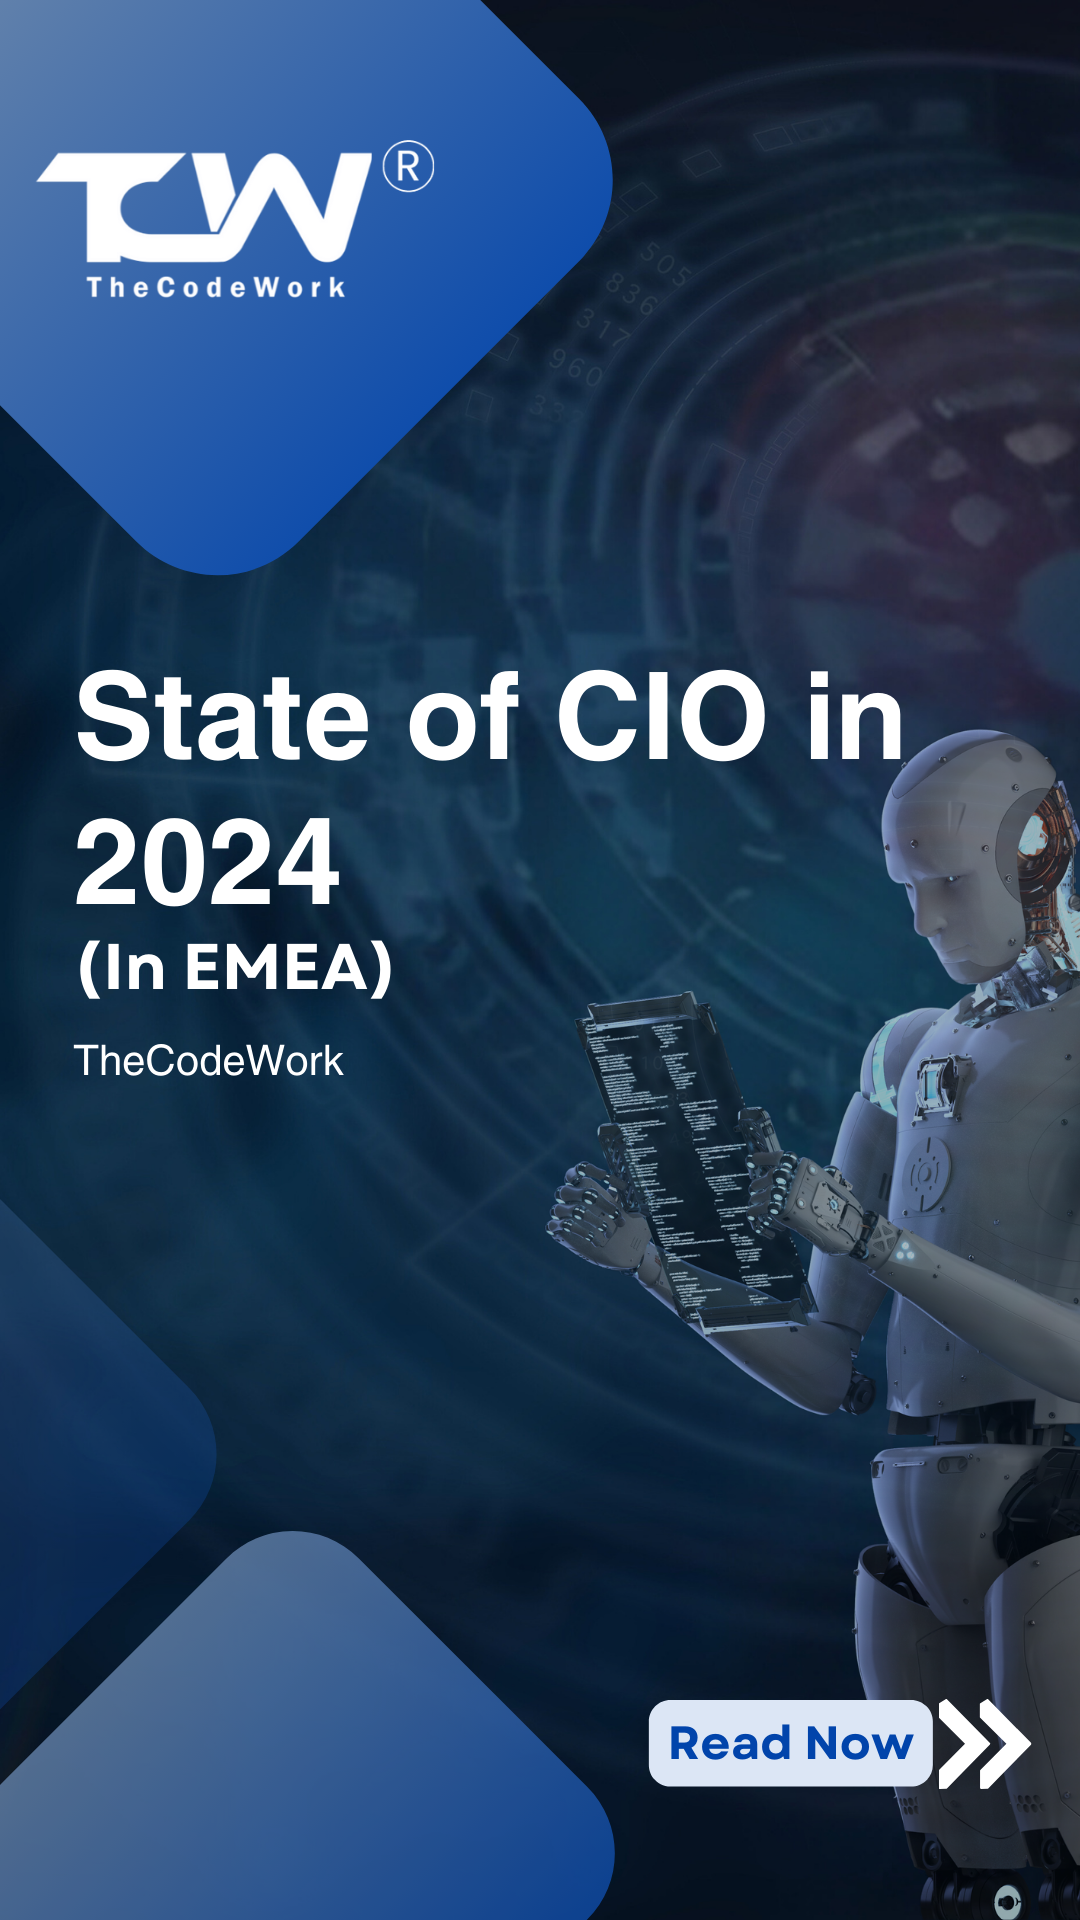 State of CIO in EMEA in 2024 